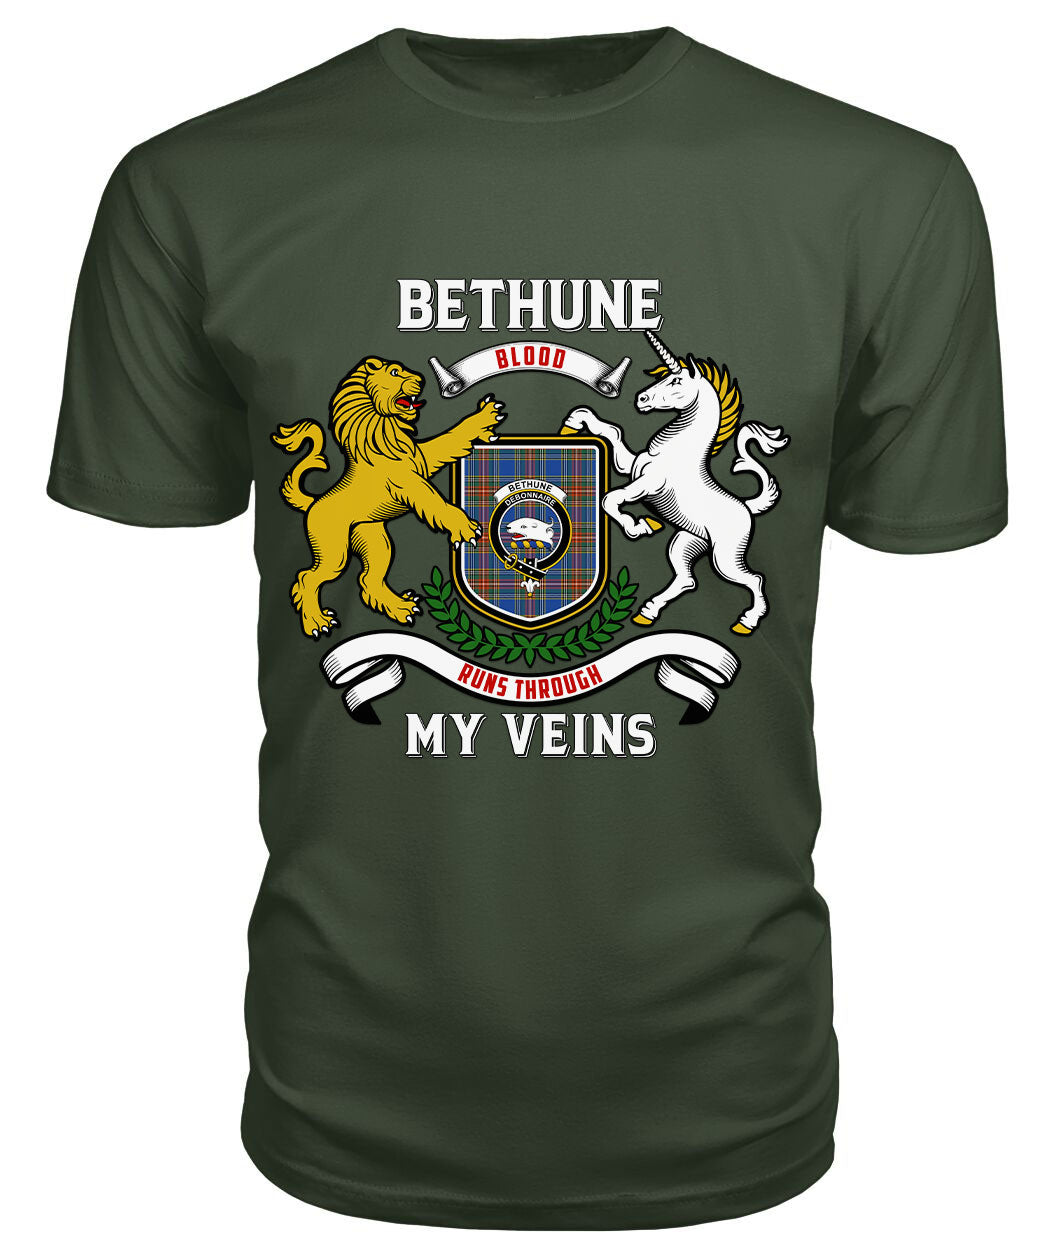 Bethune Ancient Tartan Crest 2D T-shirt - Blood Runs Through My Veins Style